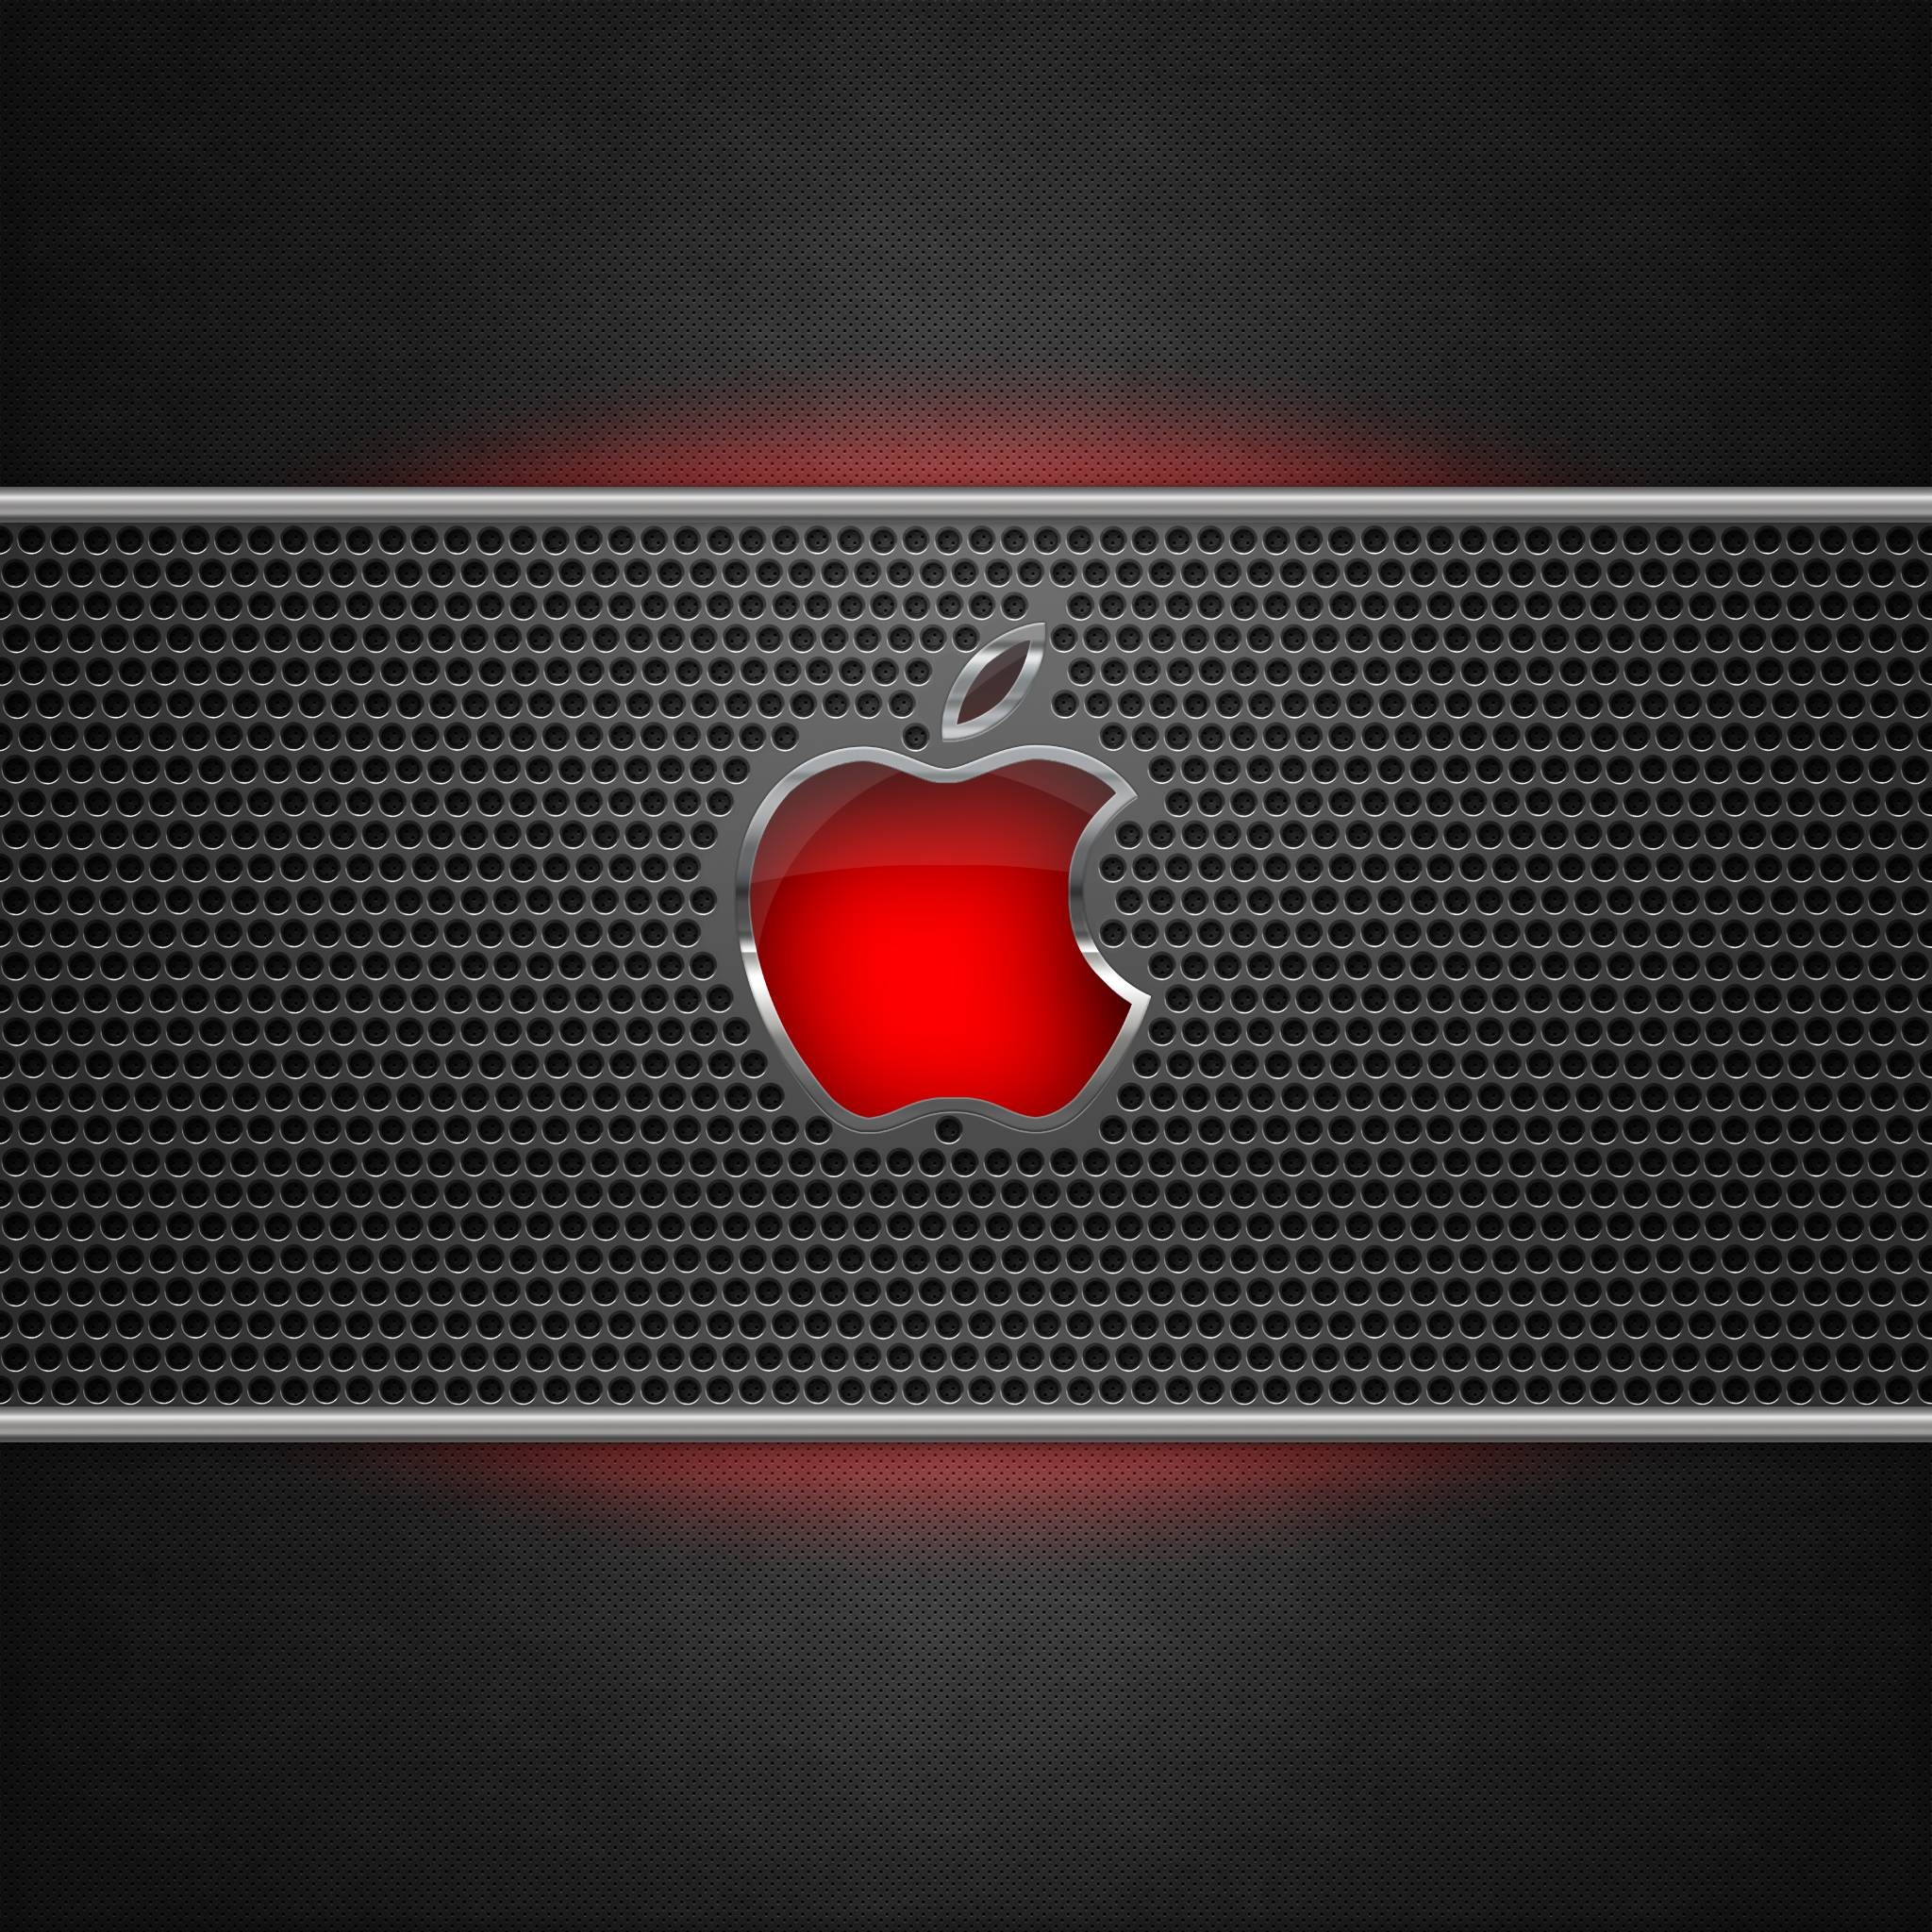 Apple Metal Glow Retina Wallpaper 2048x2048PX Wallpaper New Ipad